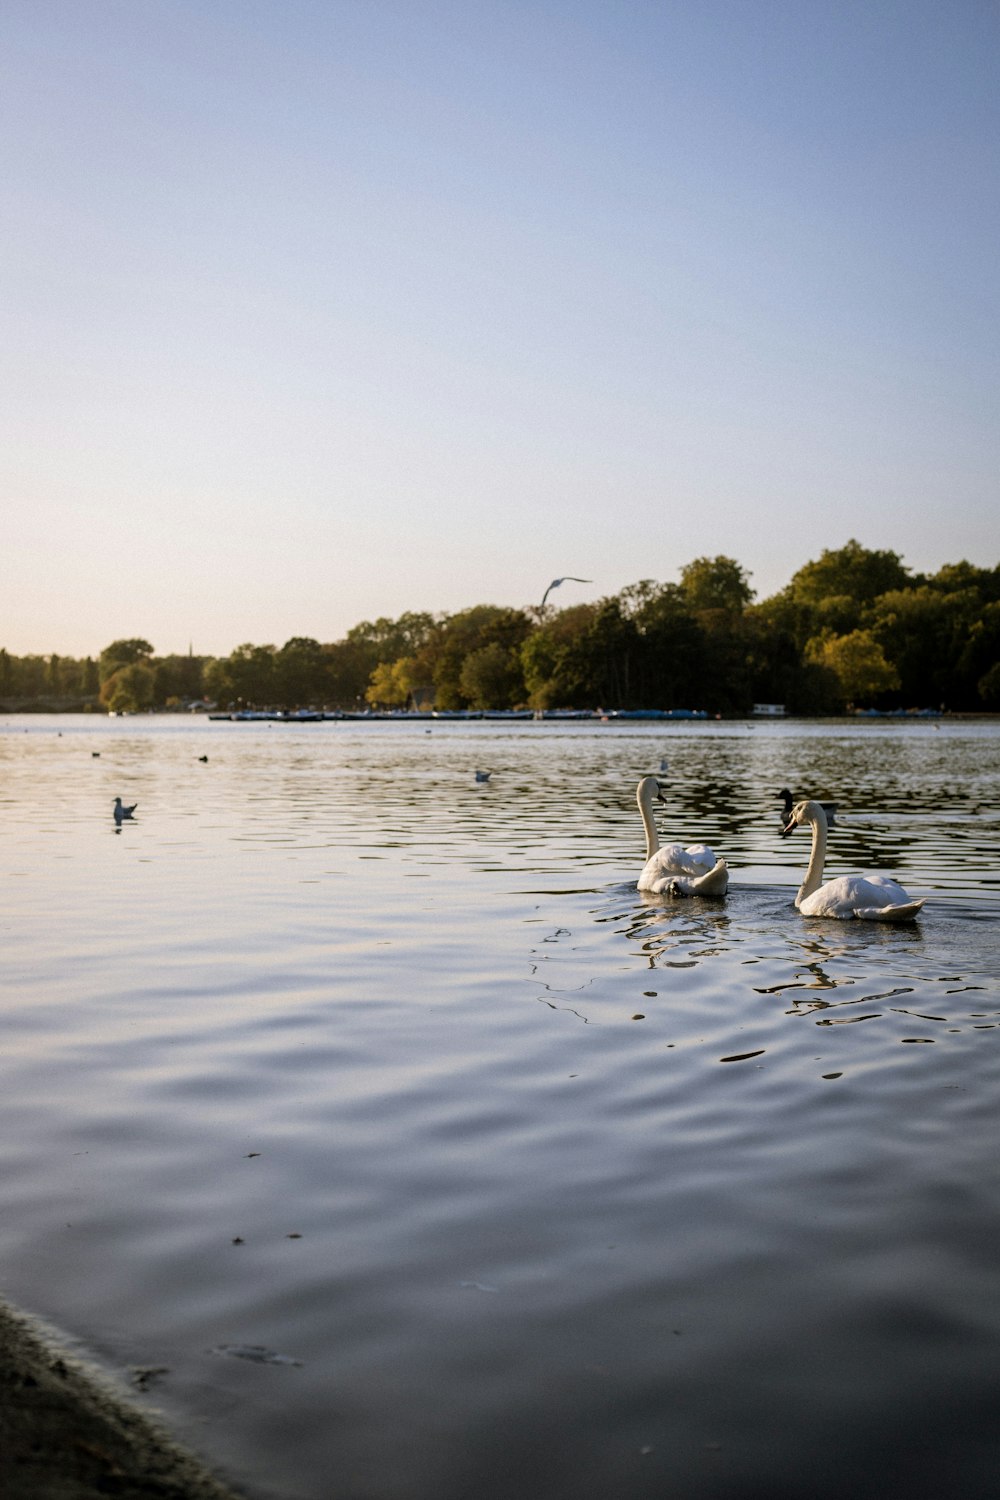 white swan on lake during daytime